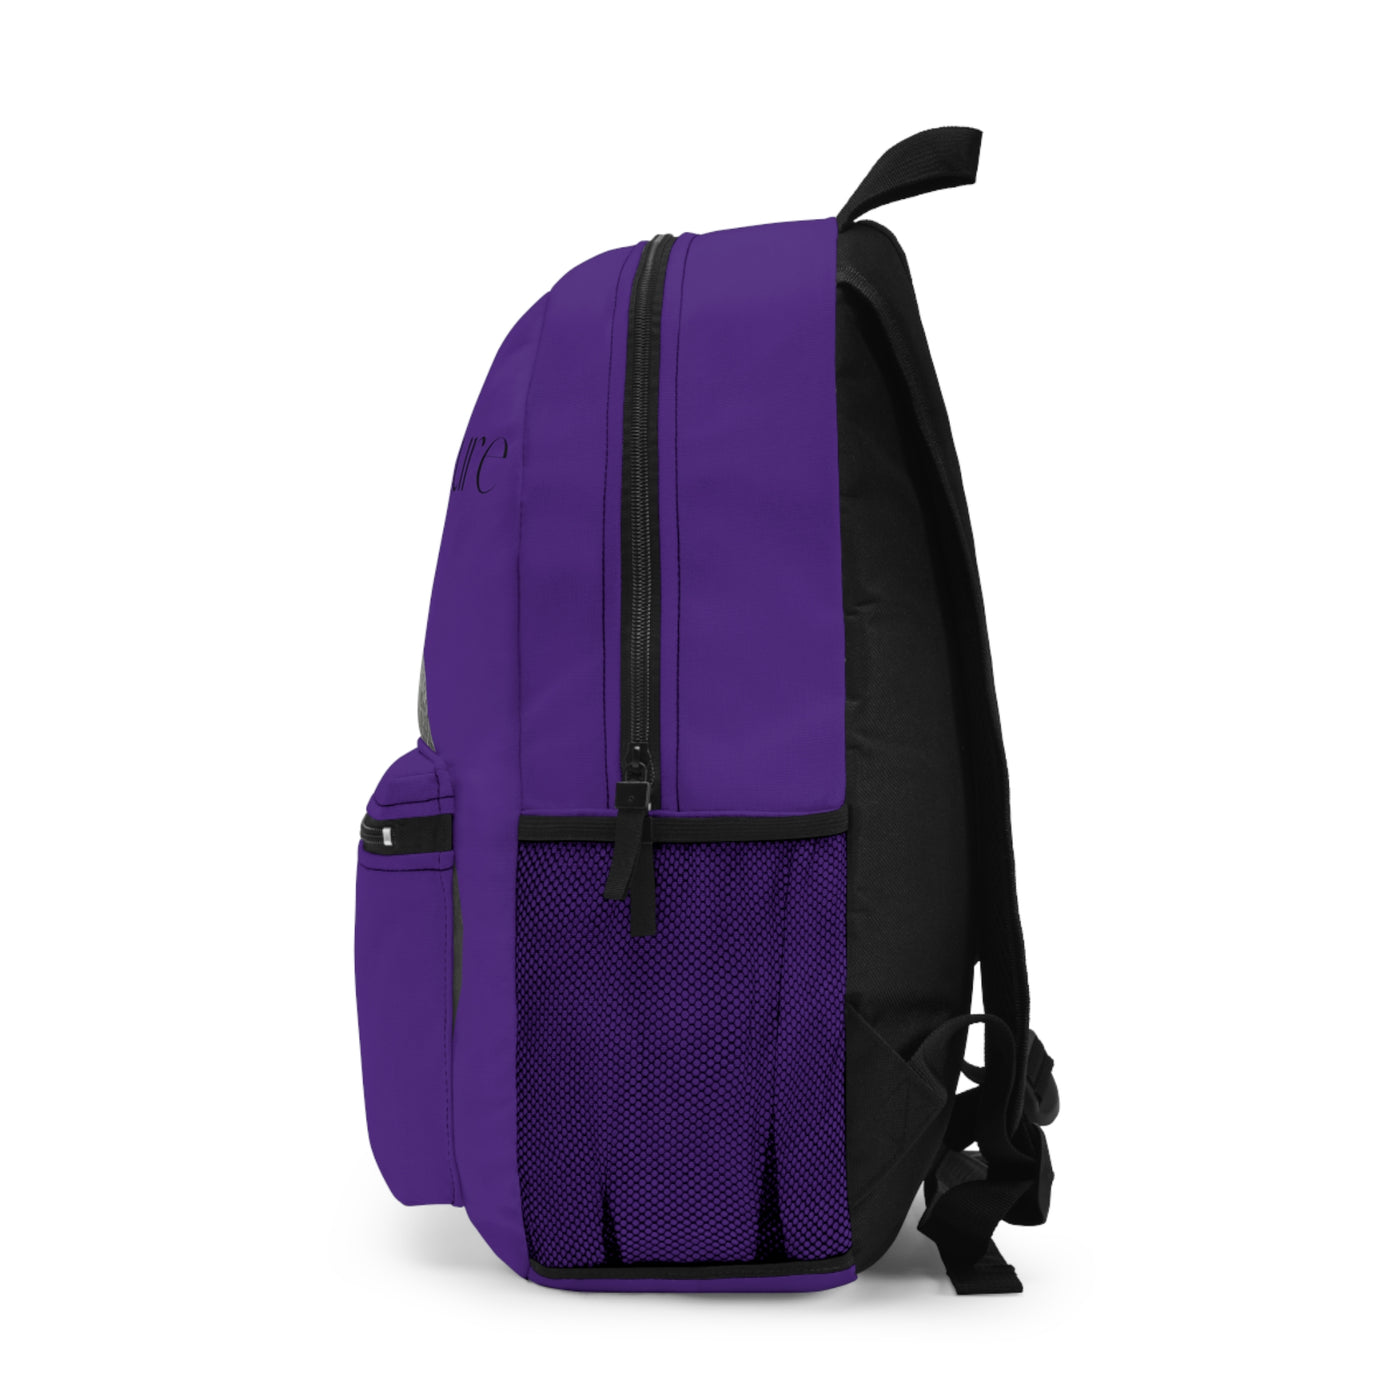 Waterproof Travel Backpack | Waterproof Backpack Bag | Let's Travel